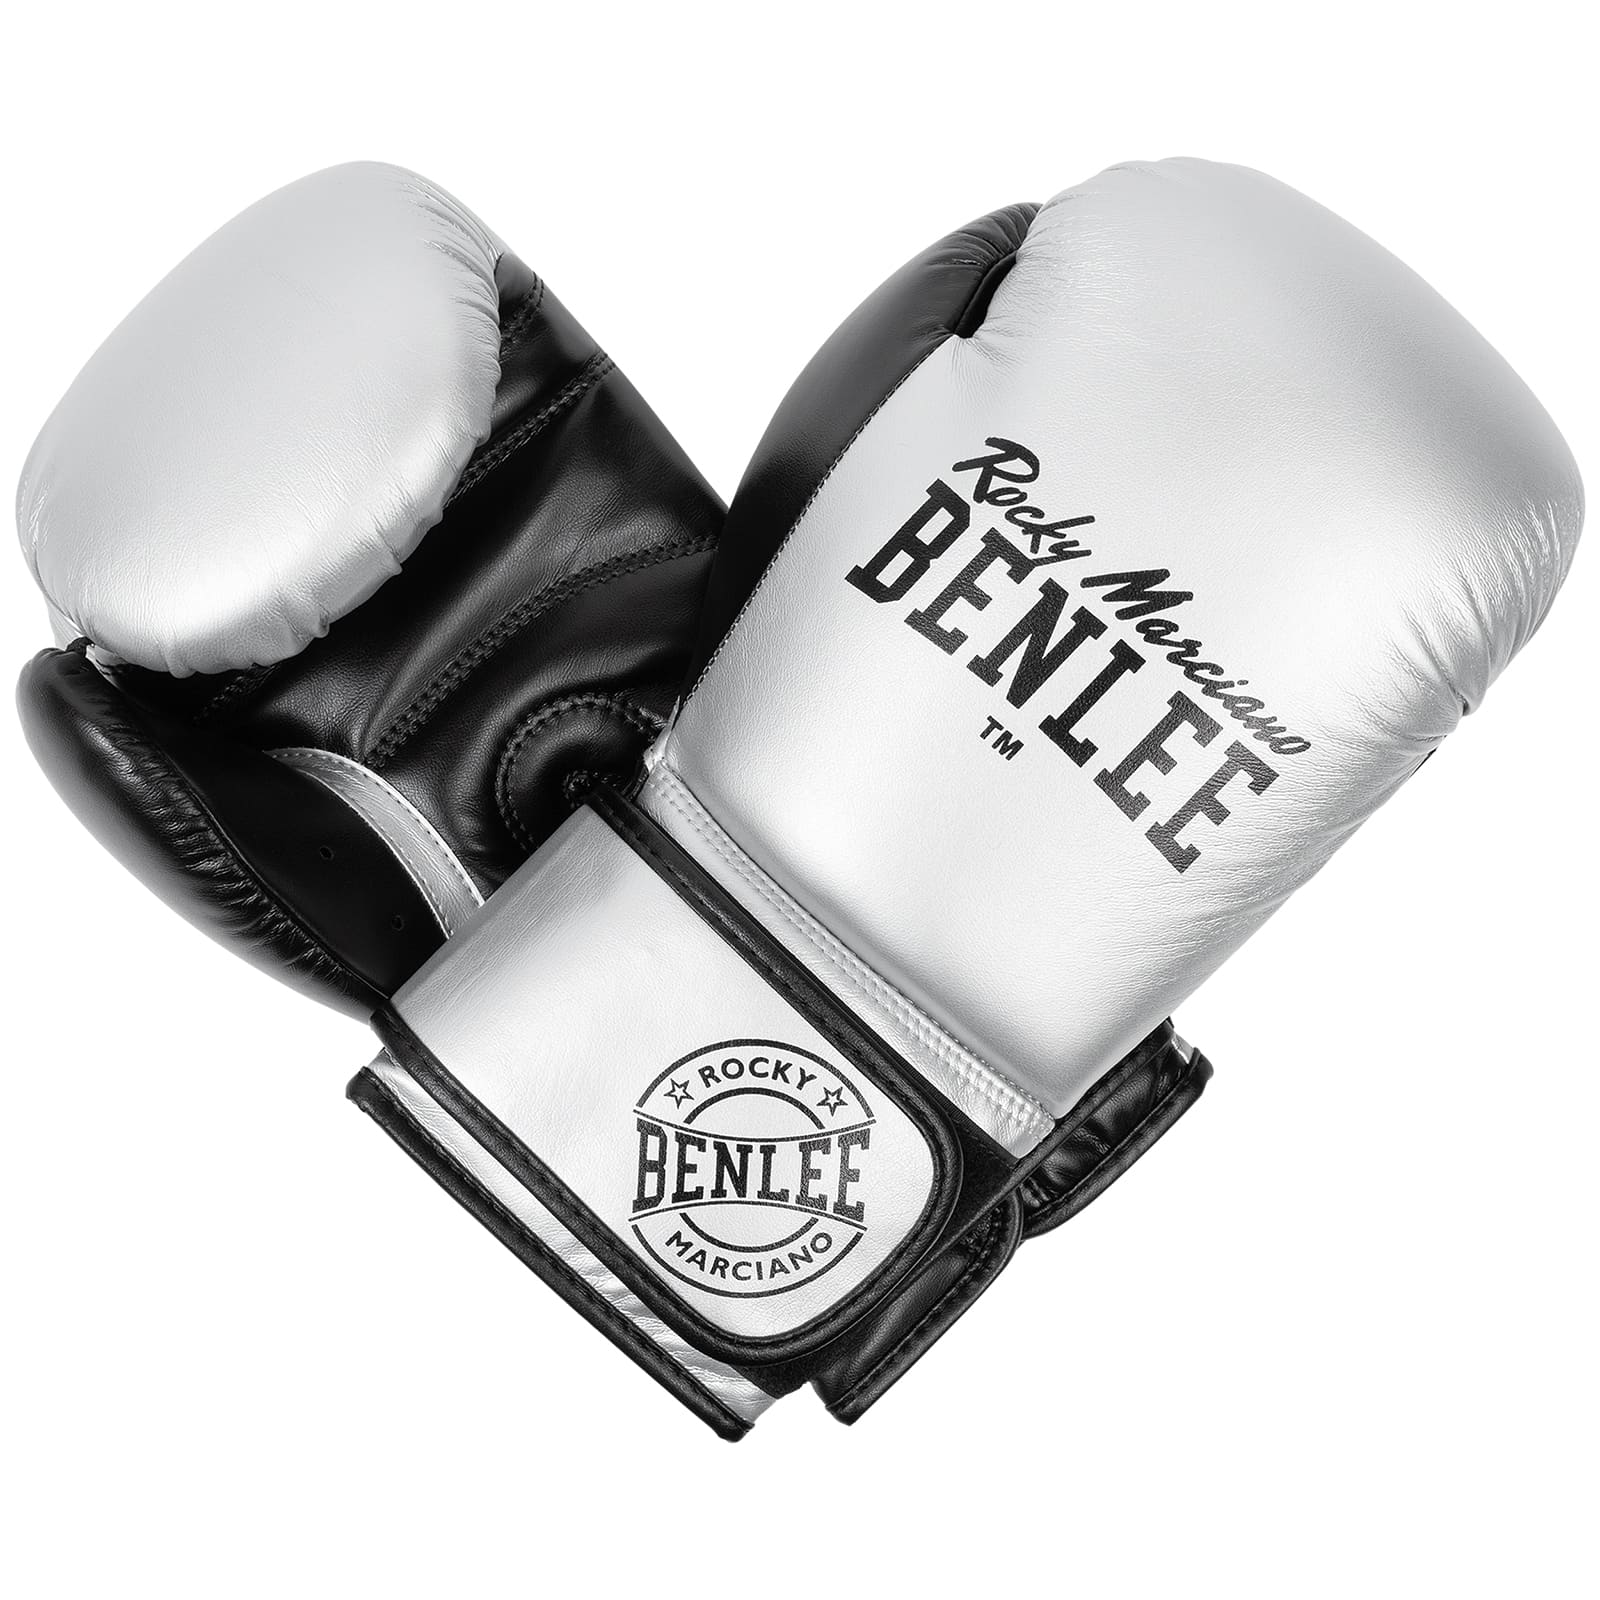 BENLEE Rocky Marciano Boxhandschuhe Carlos Silber/Schwarz Online kaufen ✓ EMPAROR